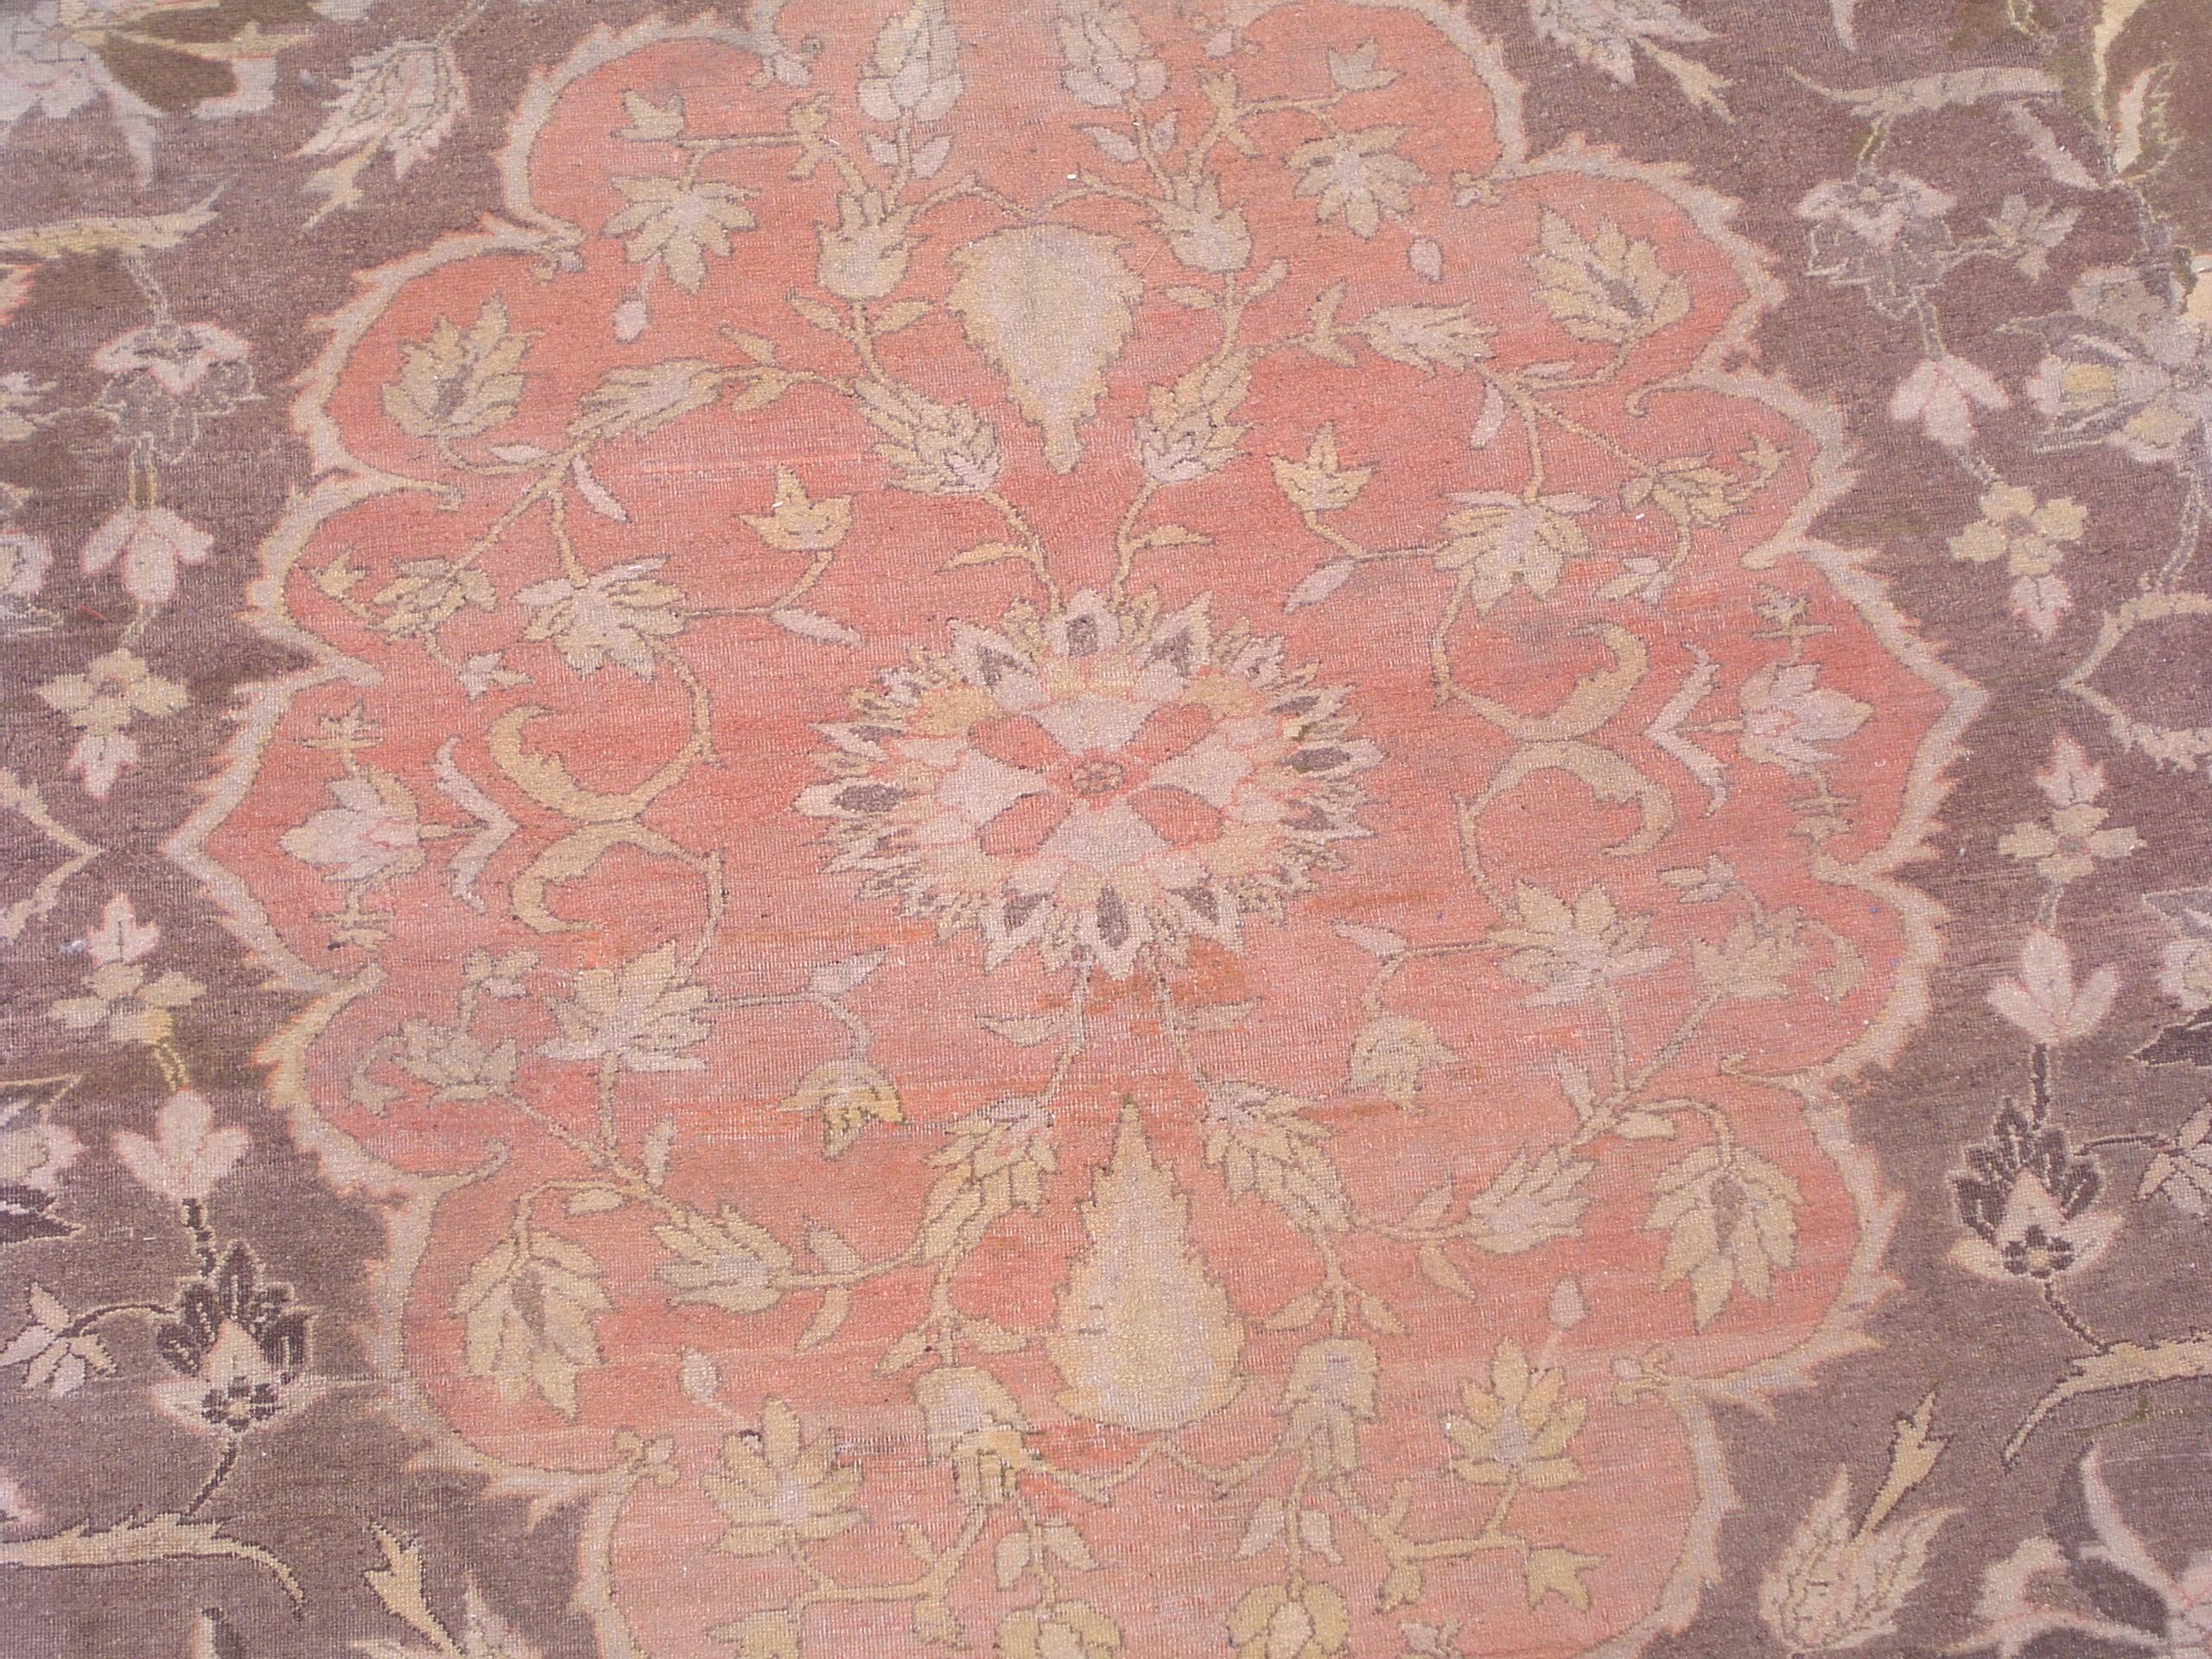 Persian Tabriz rug,

circa 1900.

Measures: 10' 11